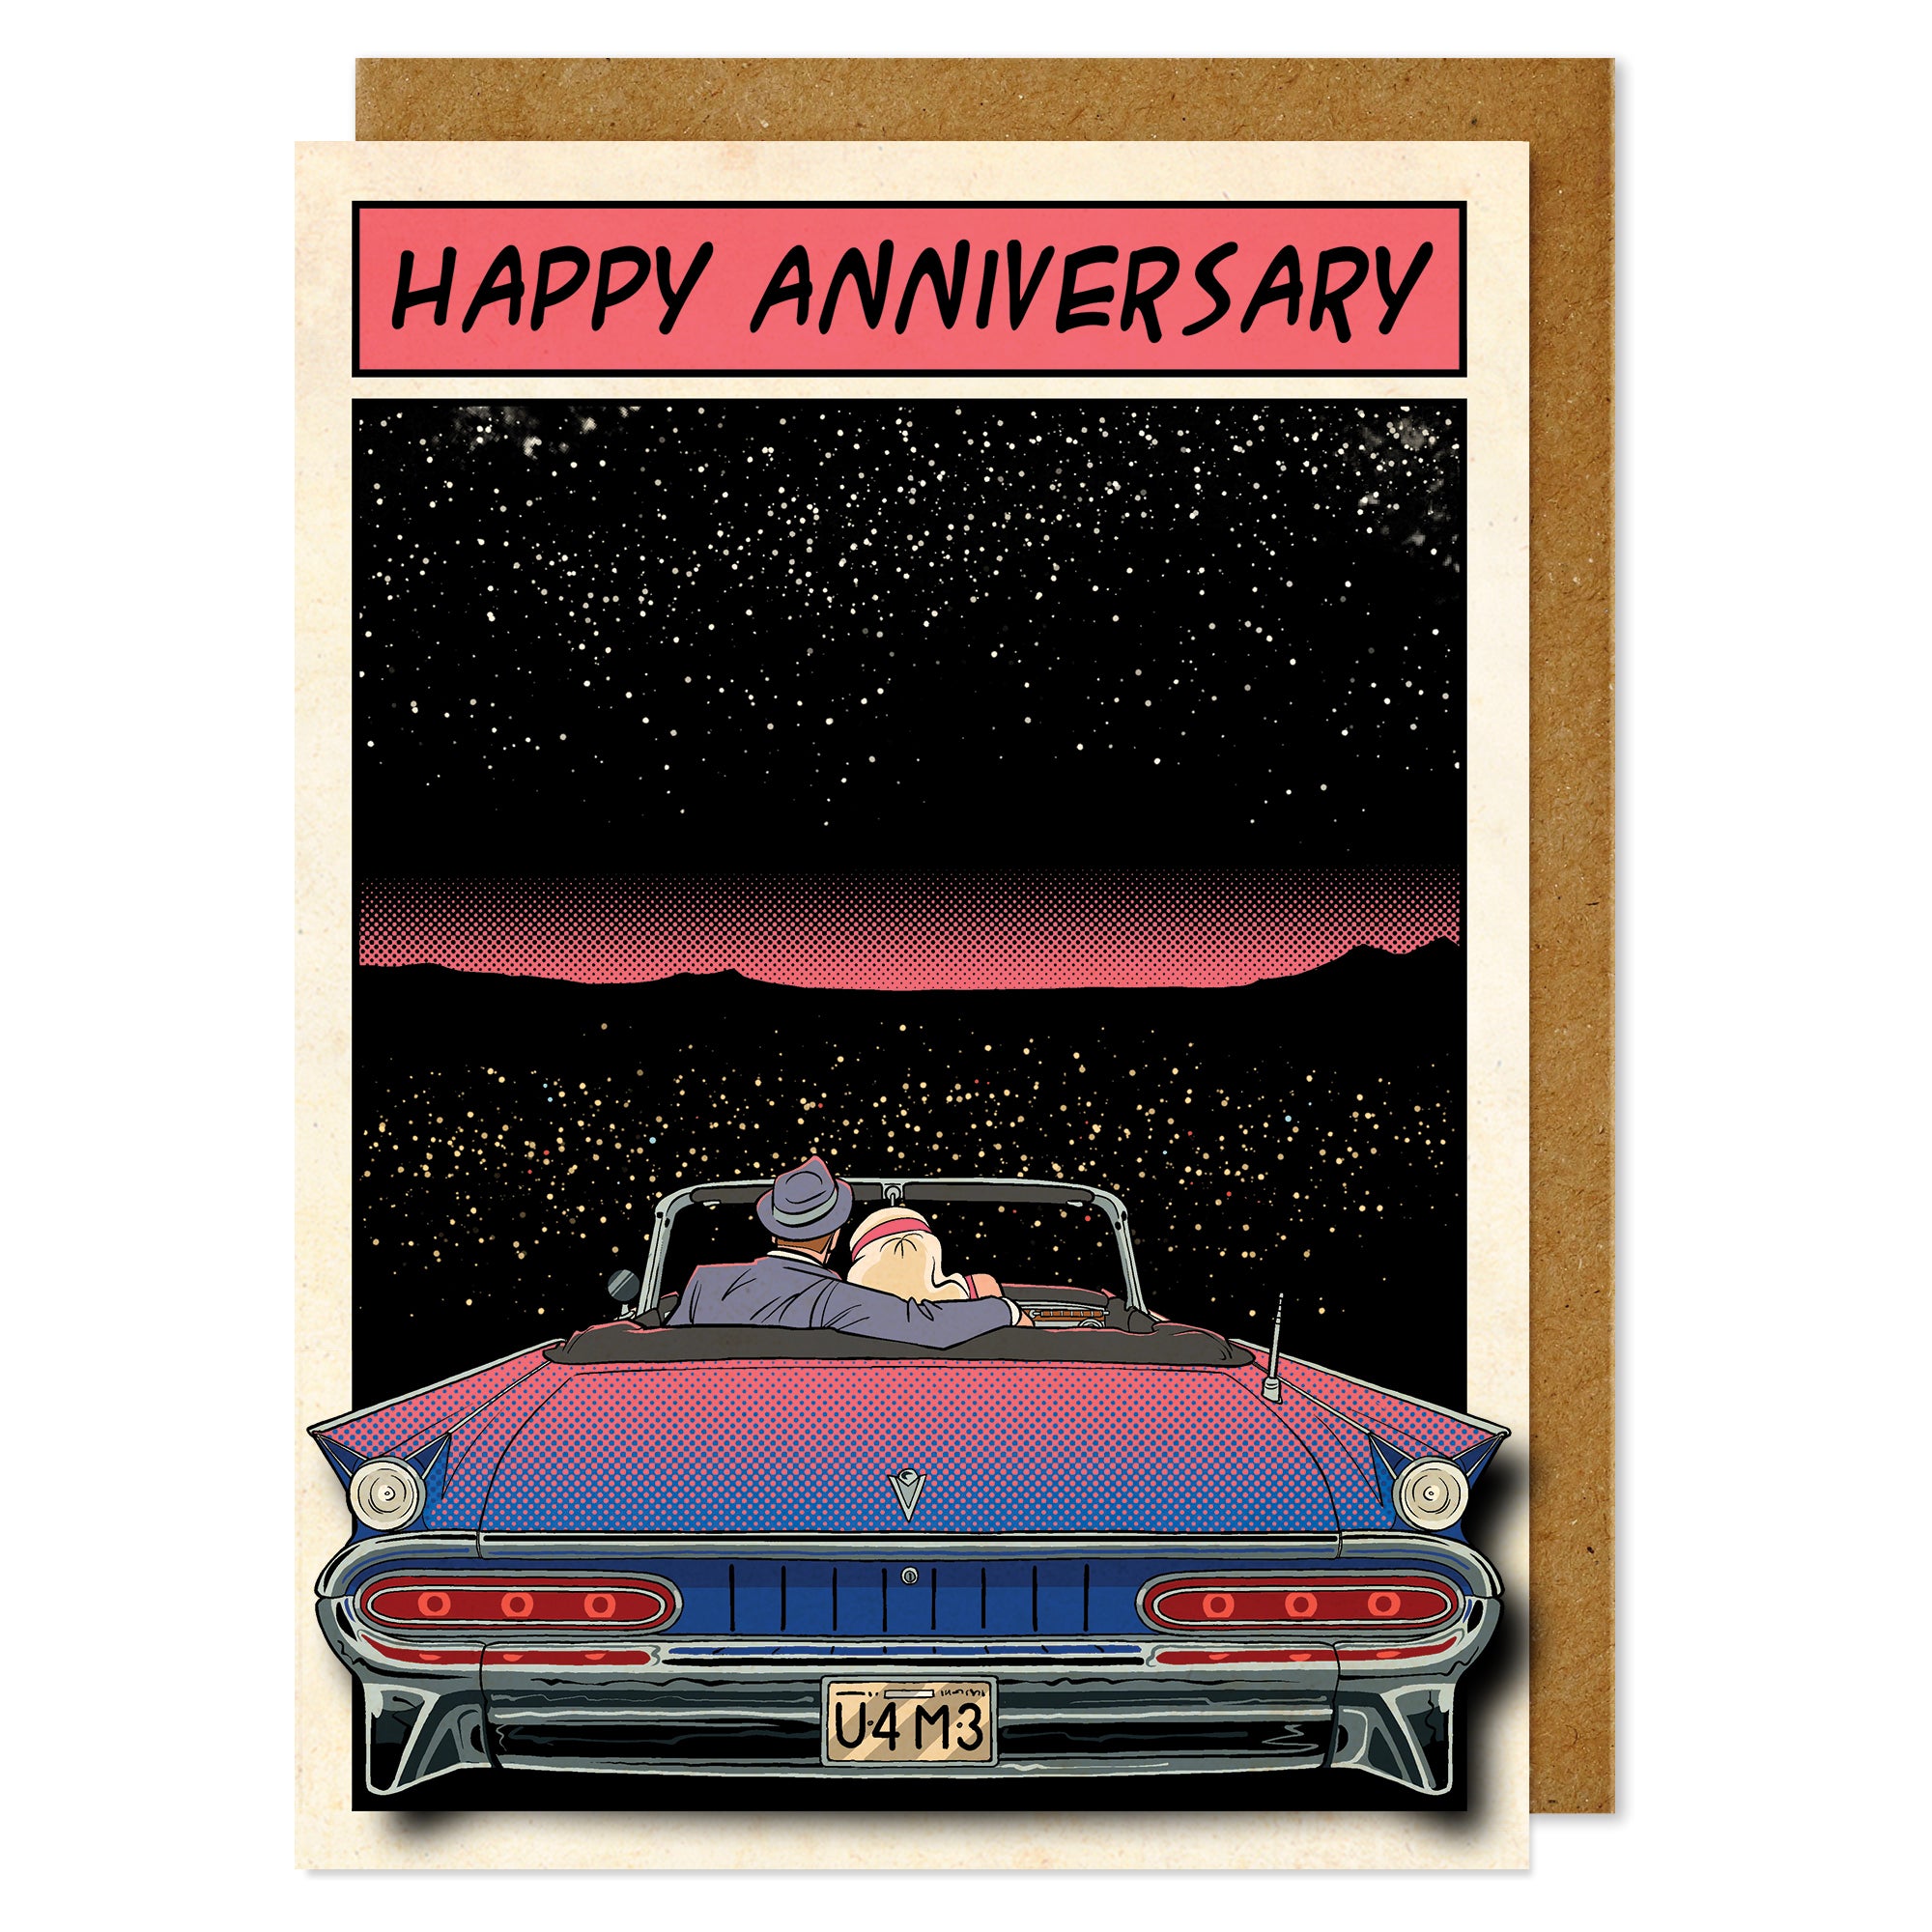 Happy Anniversary' Starry night Drive-thru